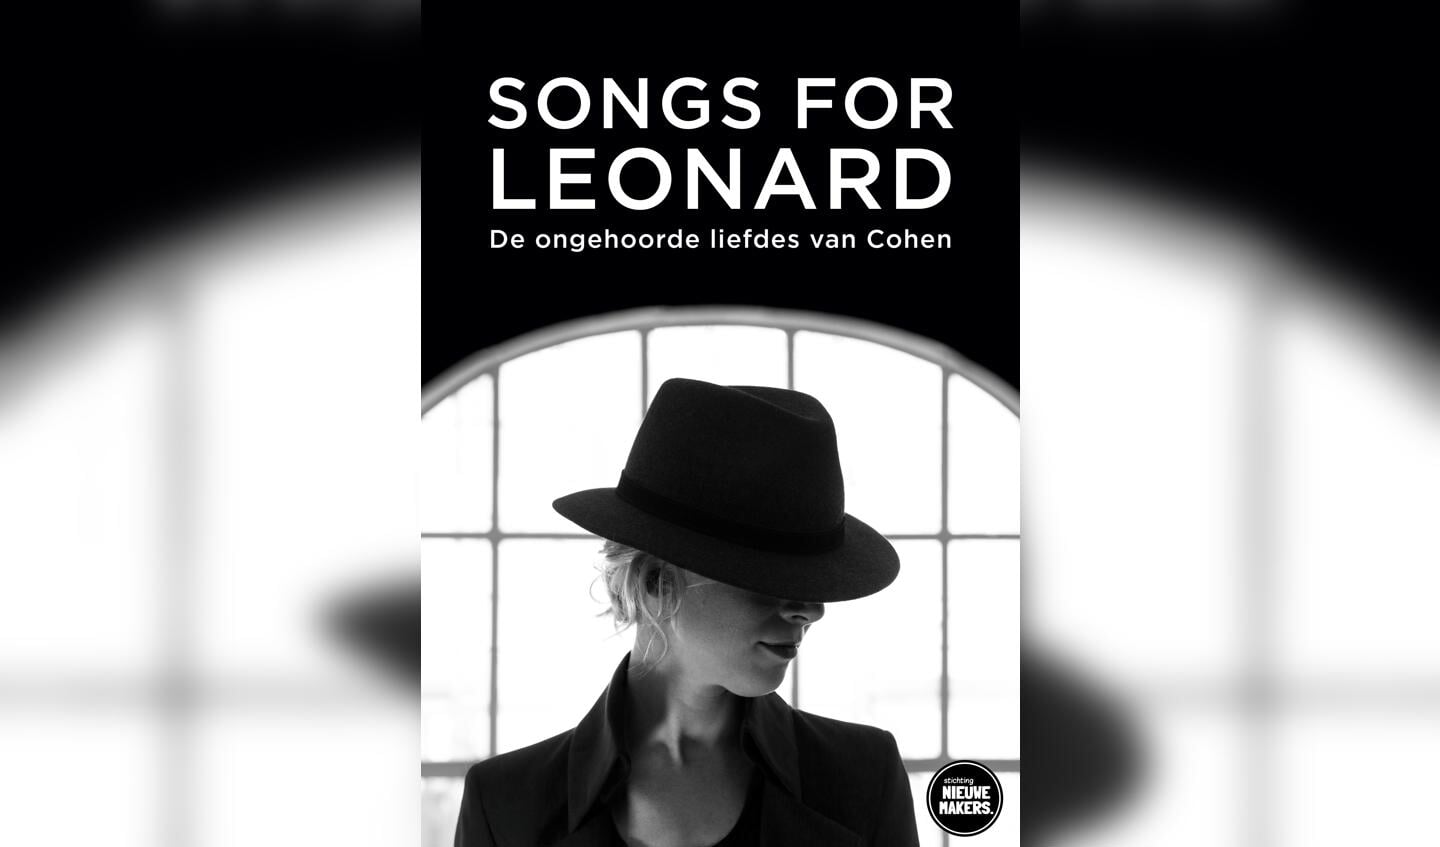 Affiche voor de voorstelling ‘Songs for Leonard’.